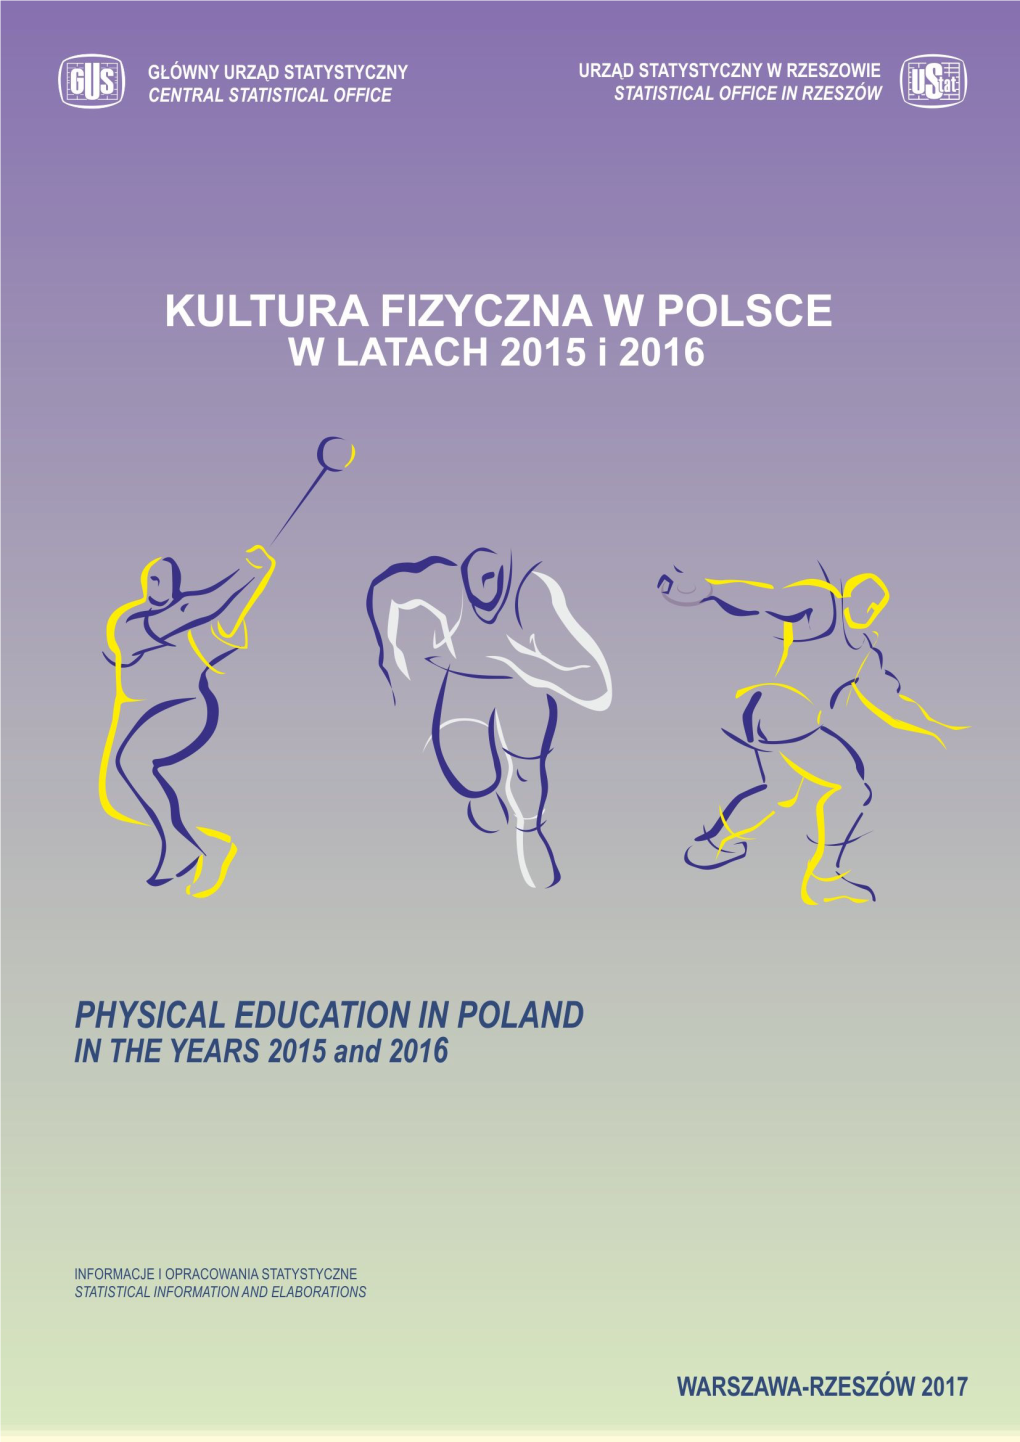 Kultura Fizyczna W Latach 2015 I 2016” Zawiera Podstawową Charakterystykę Kultury Fizycznej W Polsce